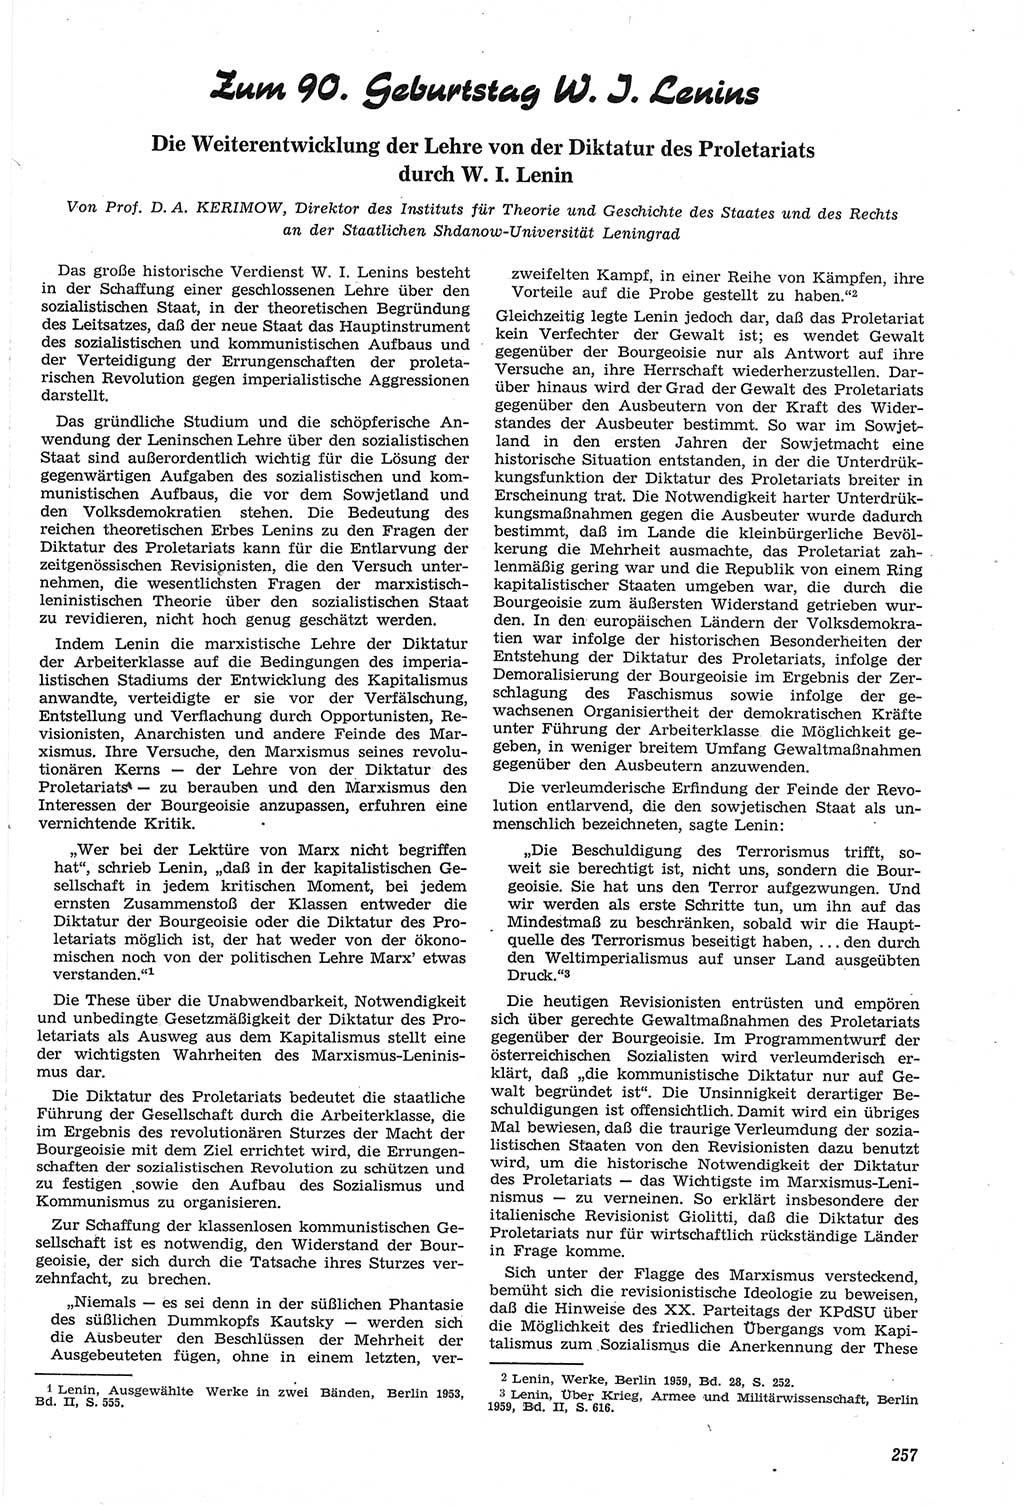 Neue Justiz (NJ), Zeitschrift für Recht und Rechtswissenschaft [Deutsche Demokratische Republik (DDR)], 14. Jahrgang 1960, Seite 257 (NJ DDR 1960, S. 257)